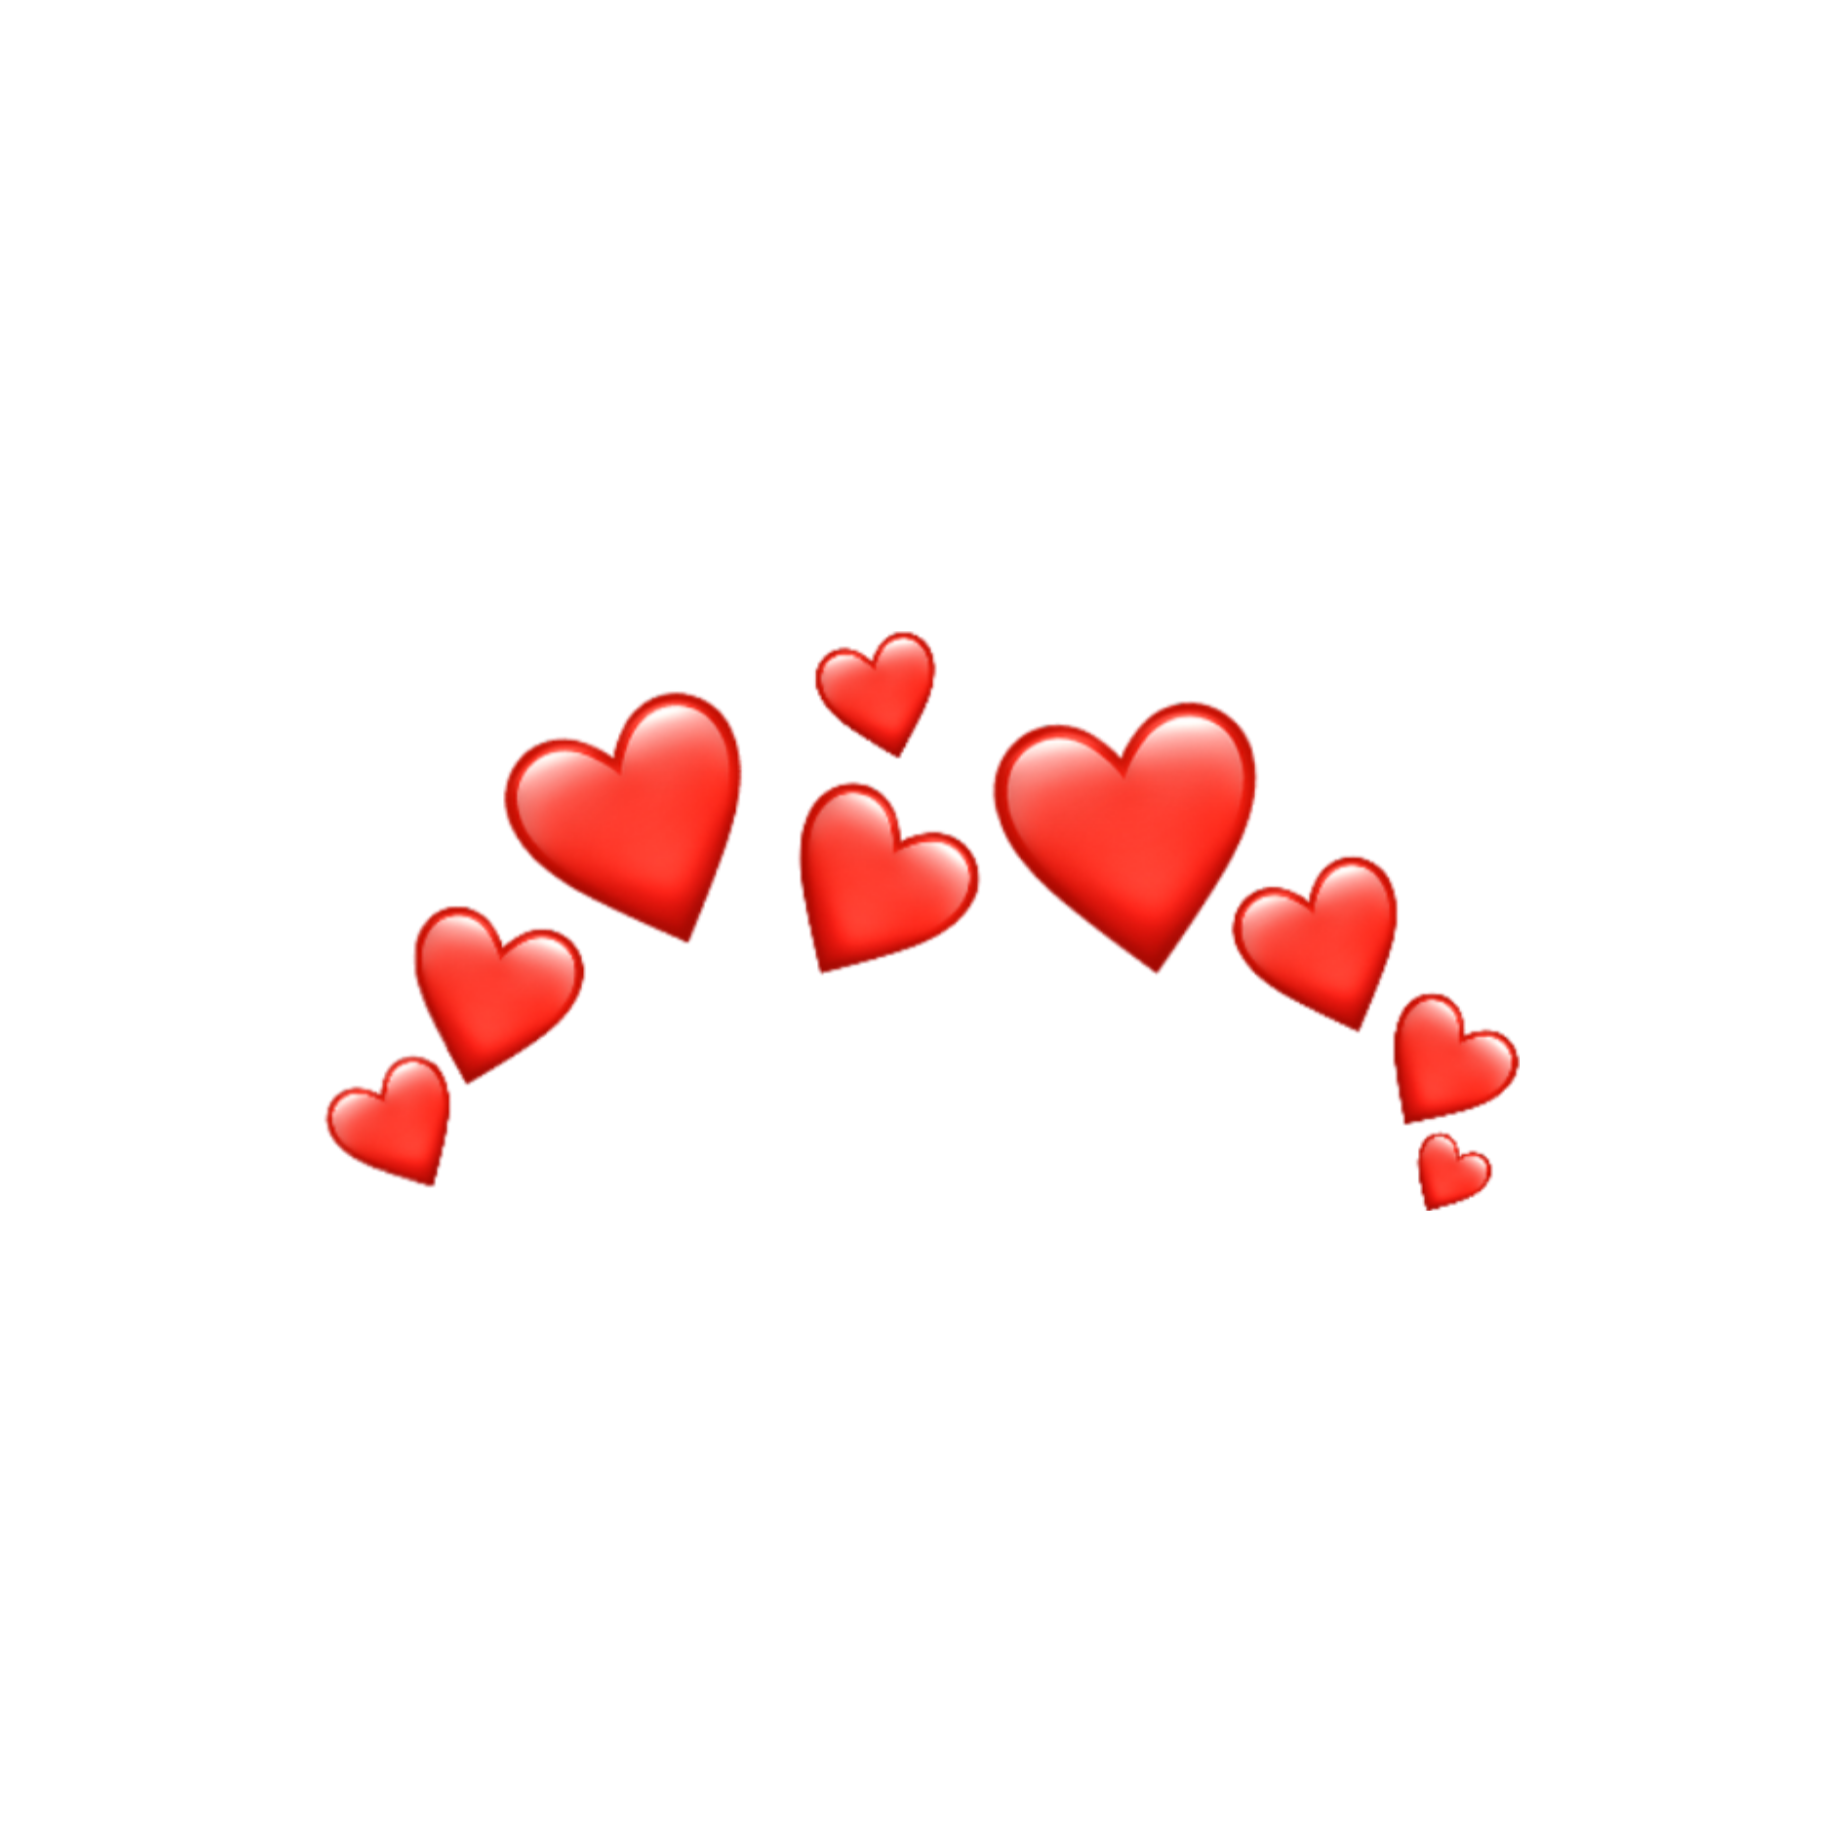 corazones freetoedit #corazones sticker by @coloradolesly